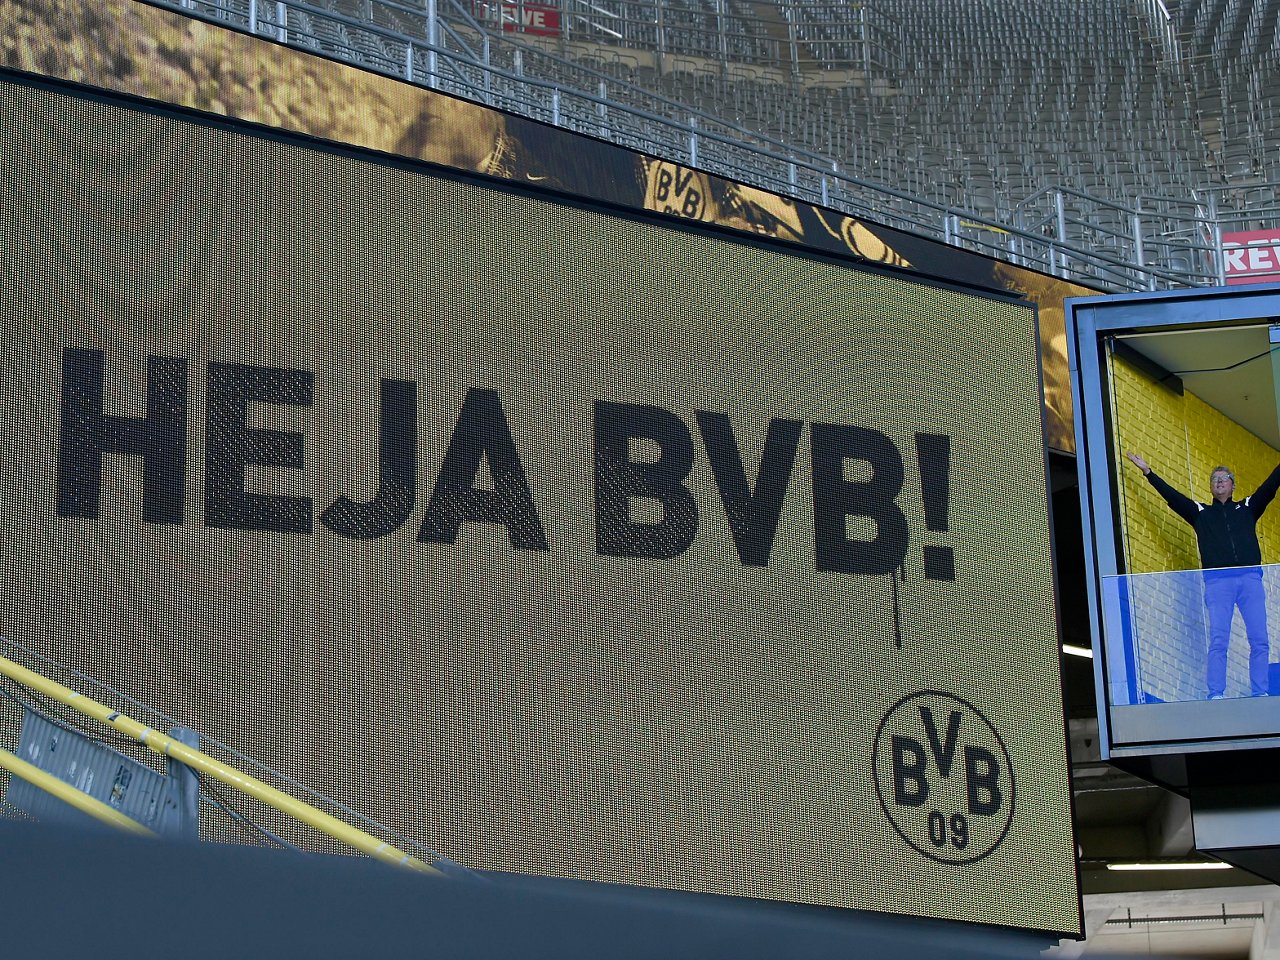 Heja BVB auf einer Anzeigewand im SIP